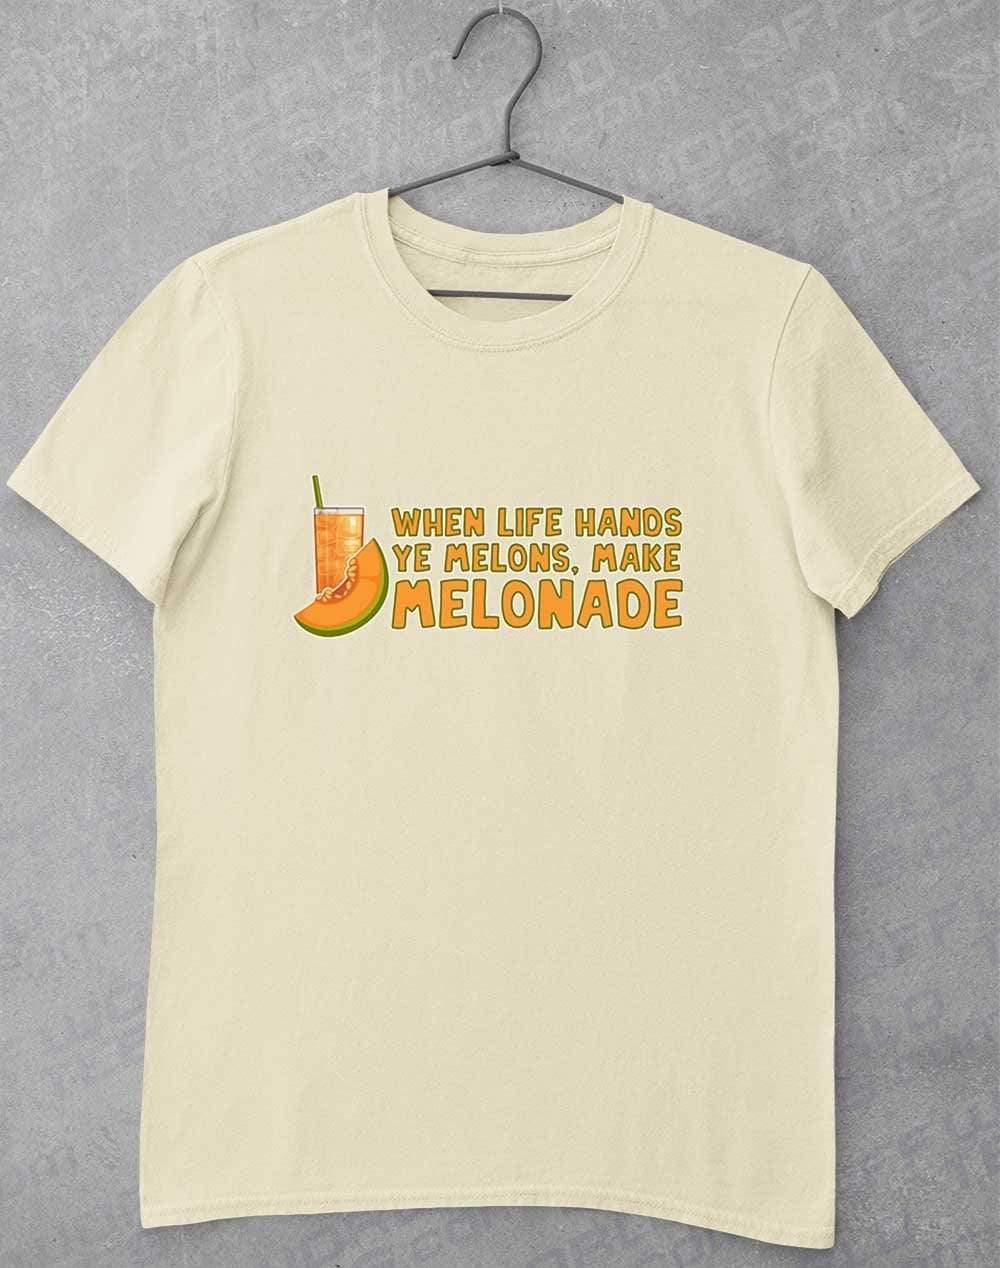 Make Melonade T-Shirt S / Natural  - Off World Tees